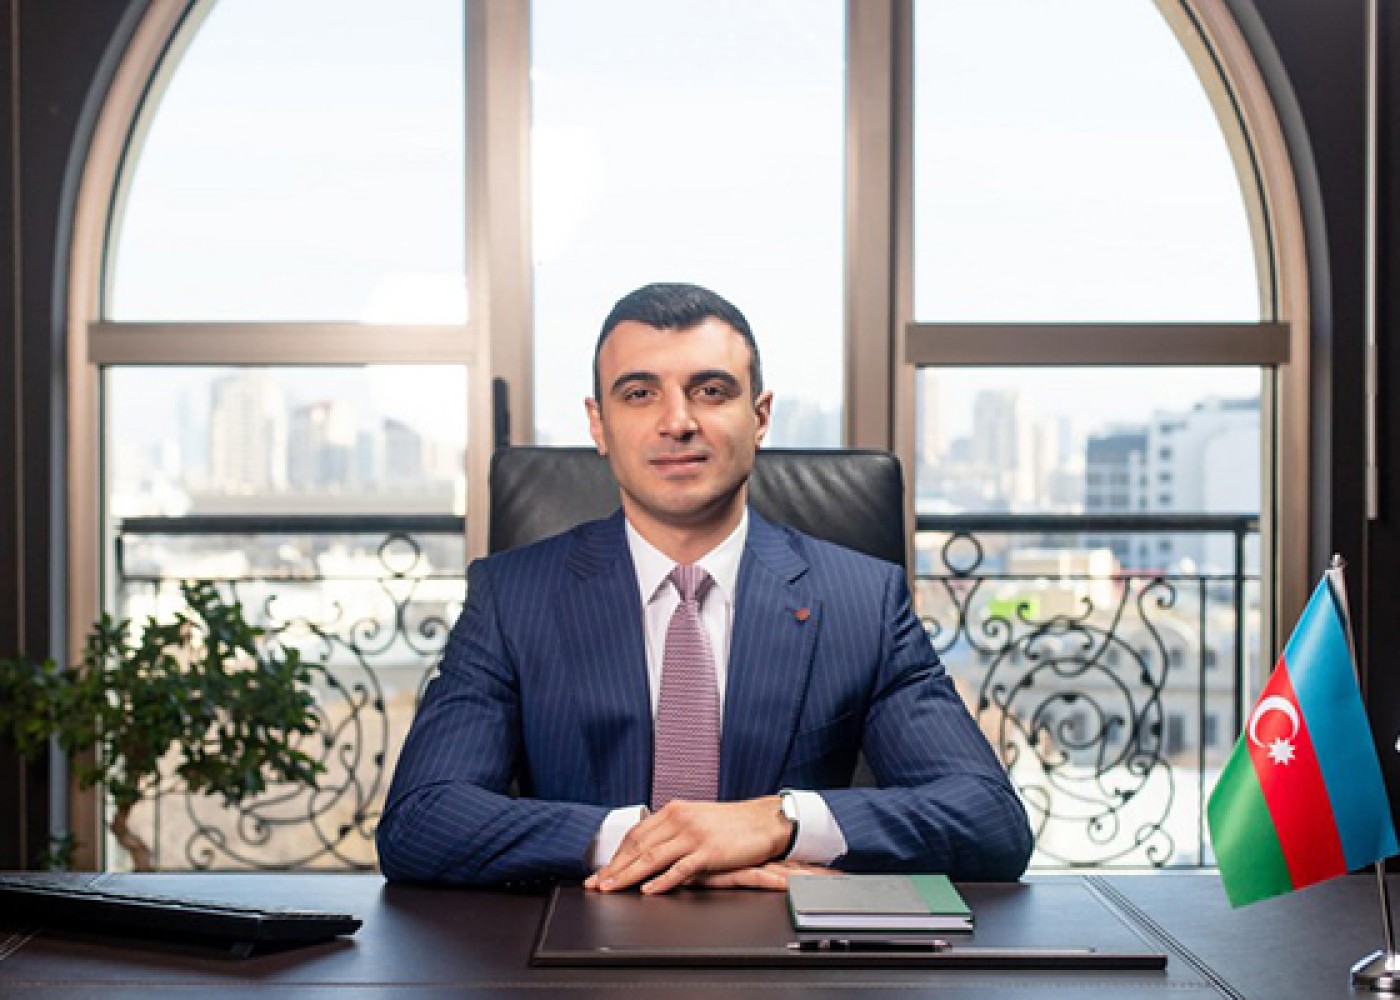 "Bankların bağlanmasını istəməzdim" - Taleh Kazımov